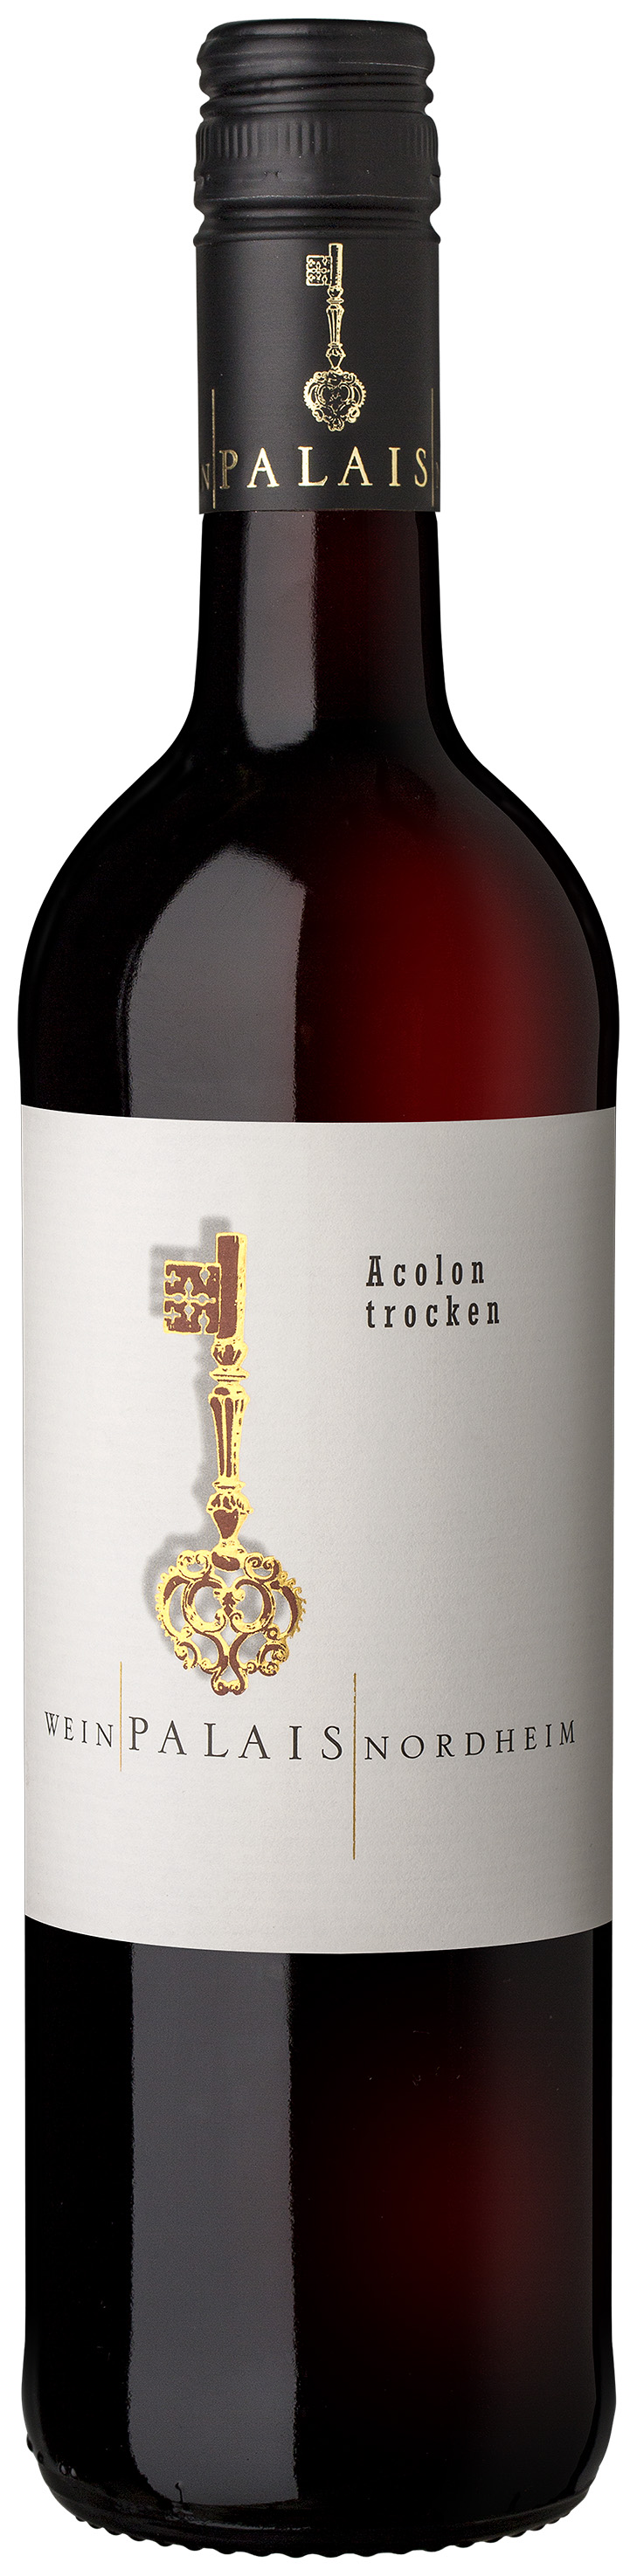 WeinPalais Nordheim 2019 Acolon trocken